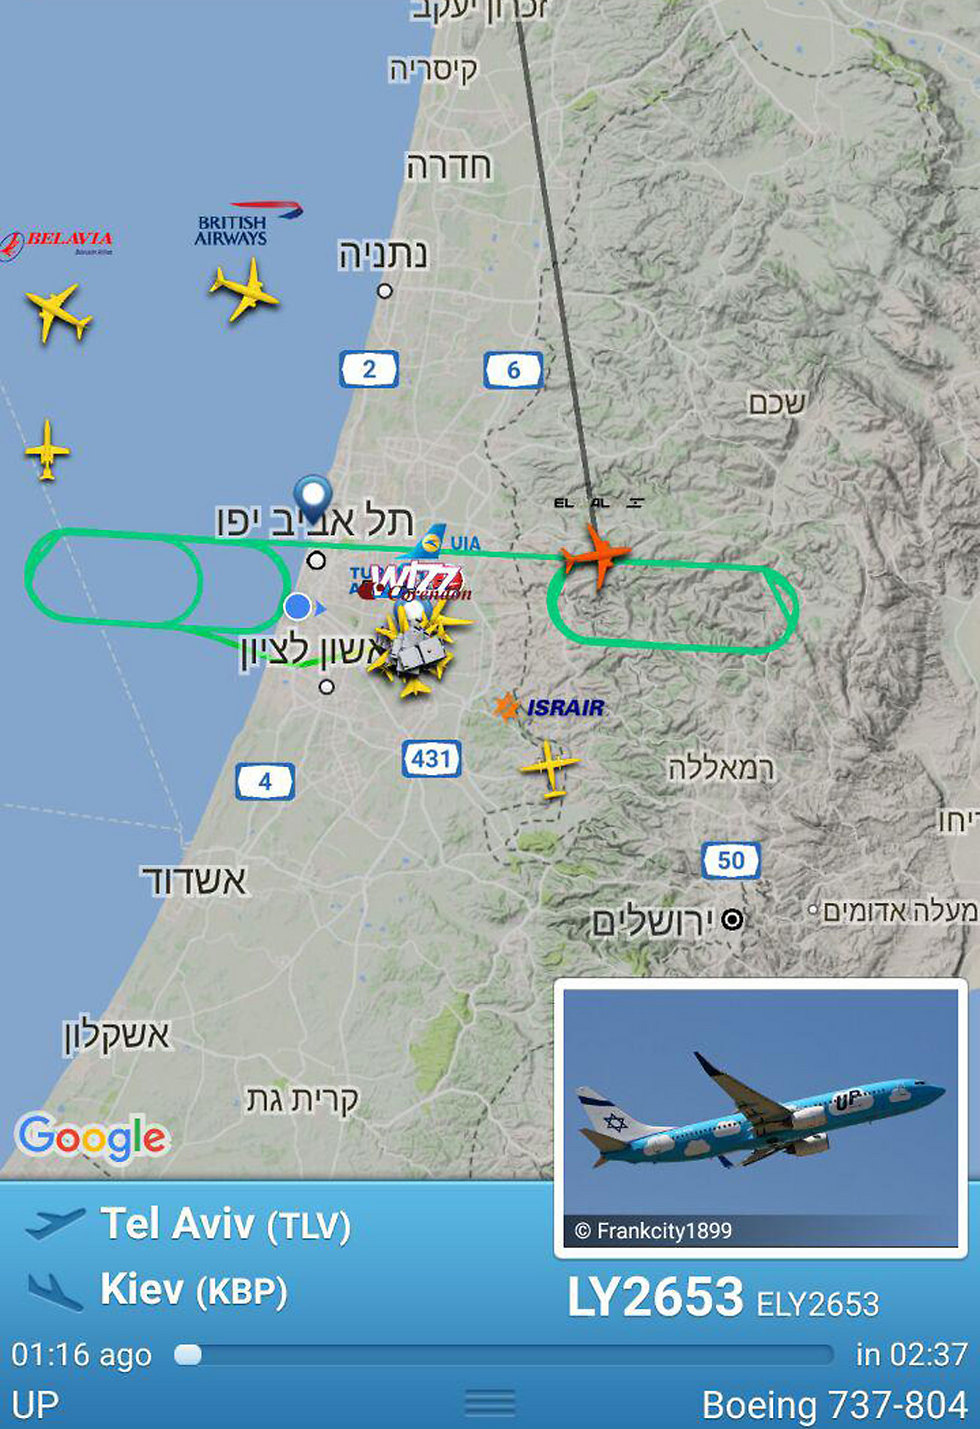 The El Al plane's flight path